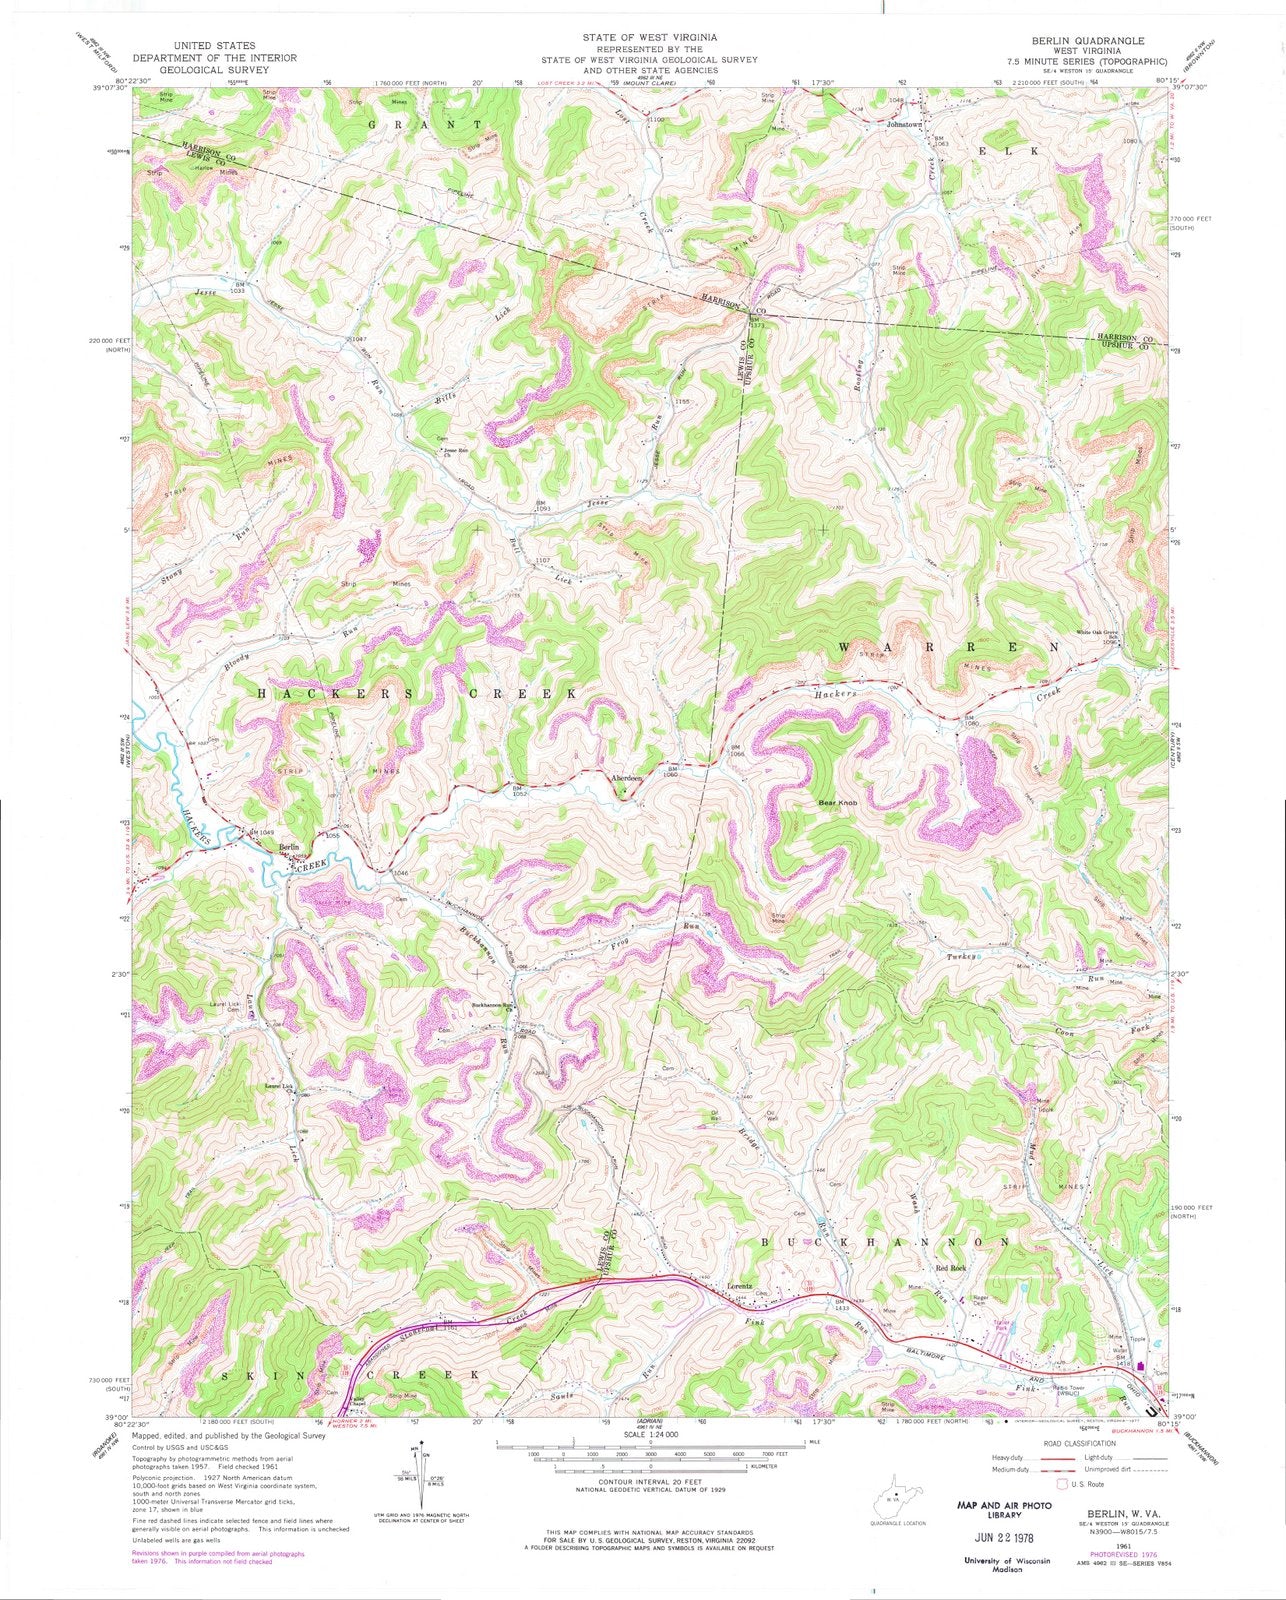 1961 Berlin, WV - West Virginia - USGS Topographic Map